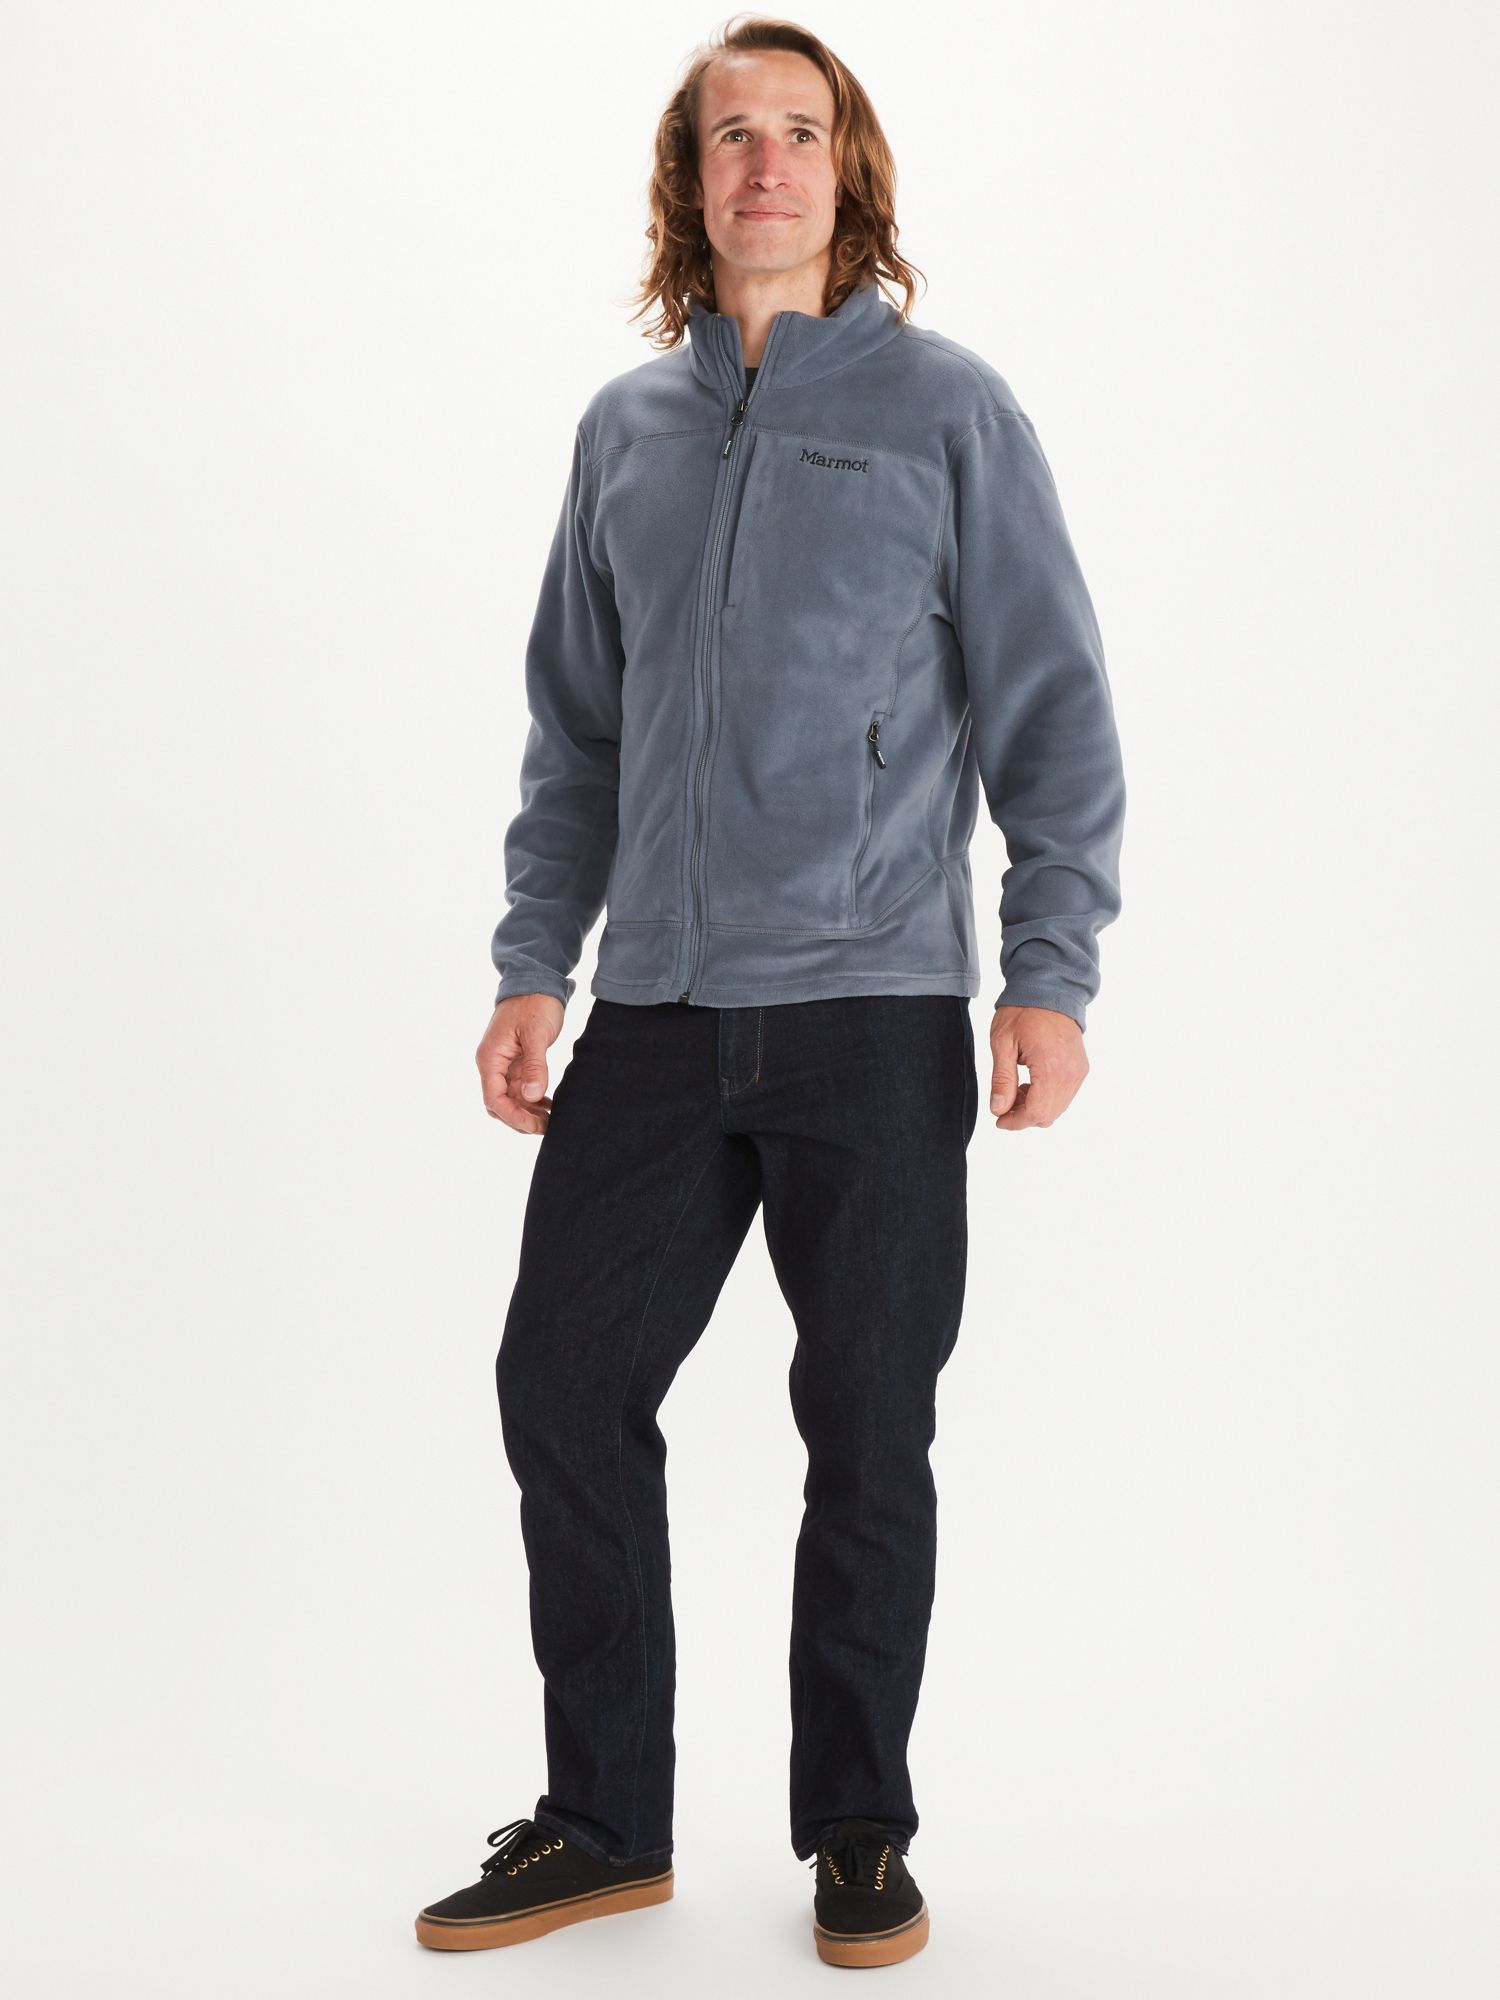 Men's Reactor 2.0 Fleece Jacket